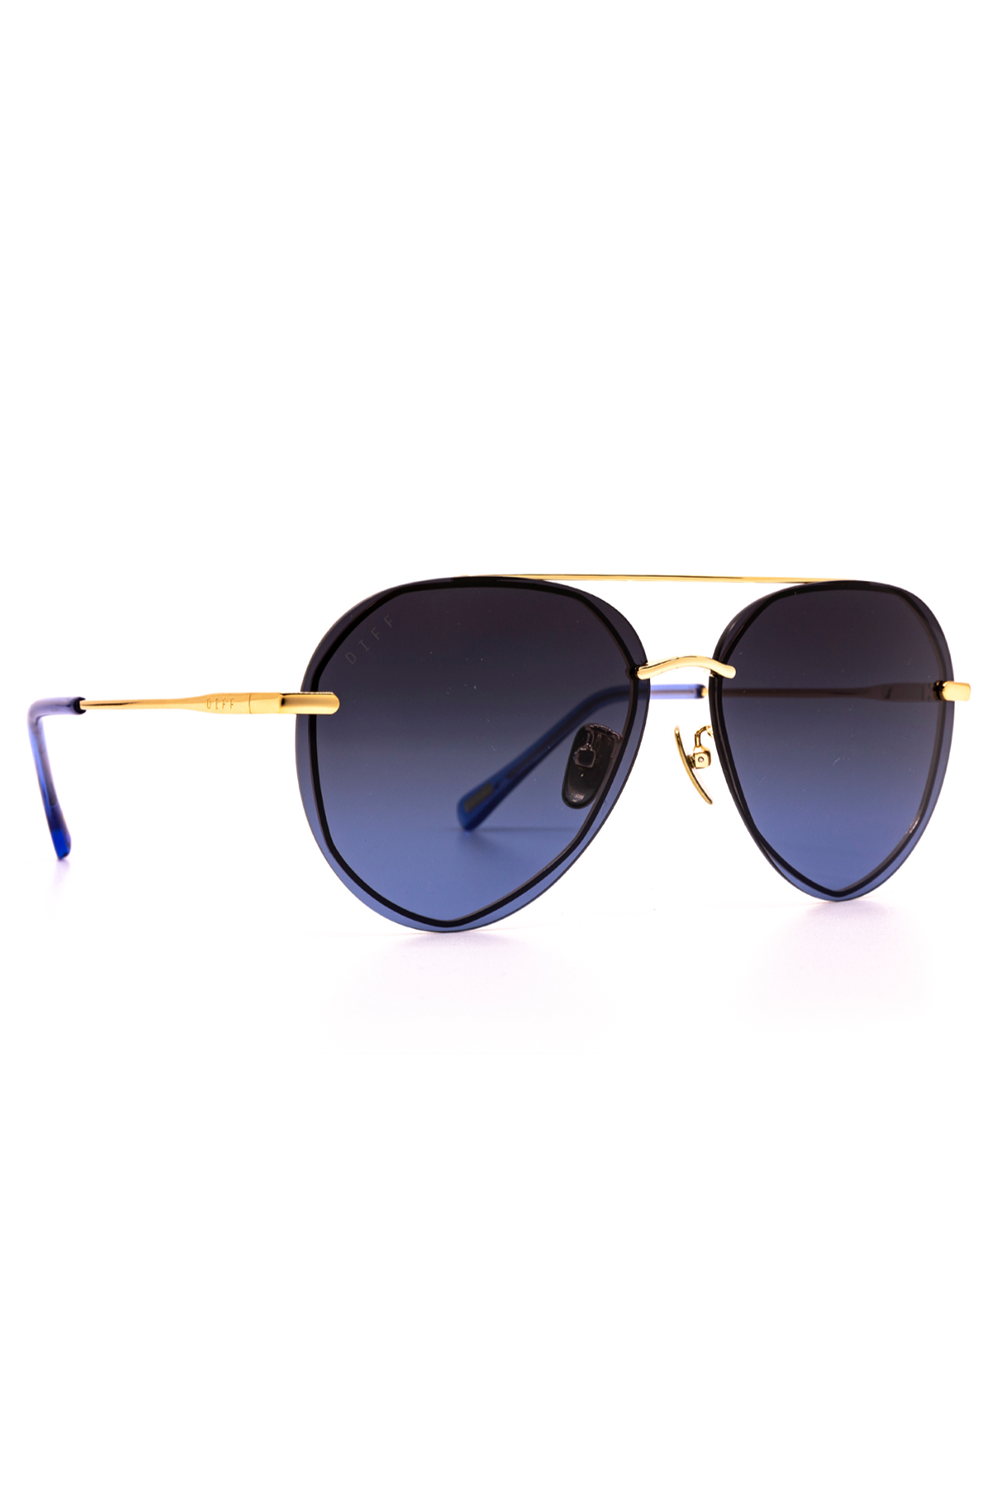 Lenox Sunglasses - Gold Blue